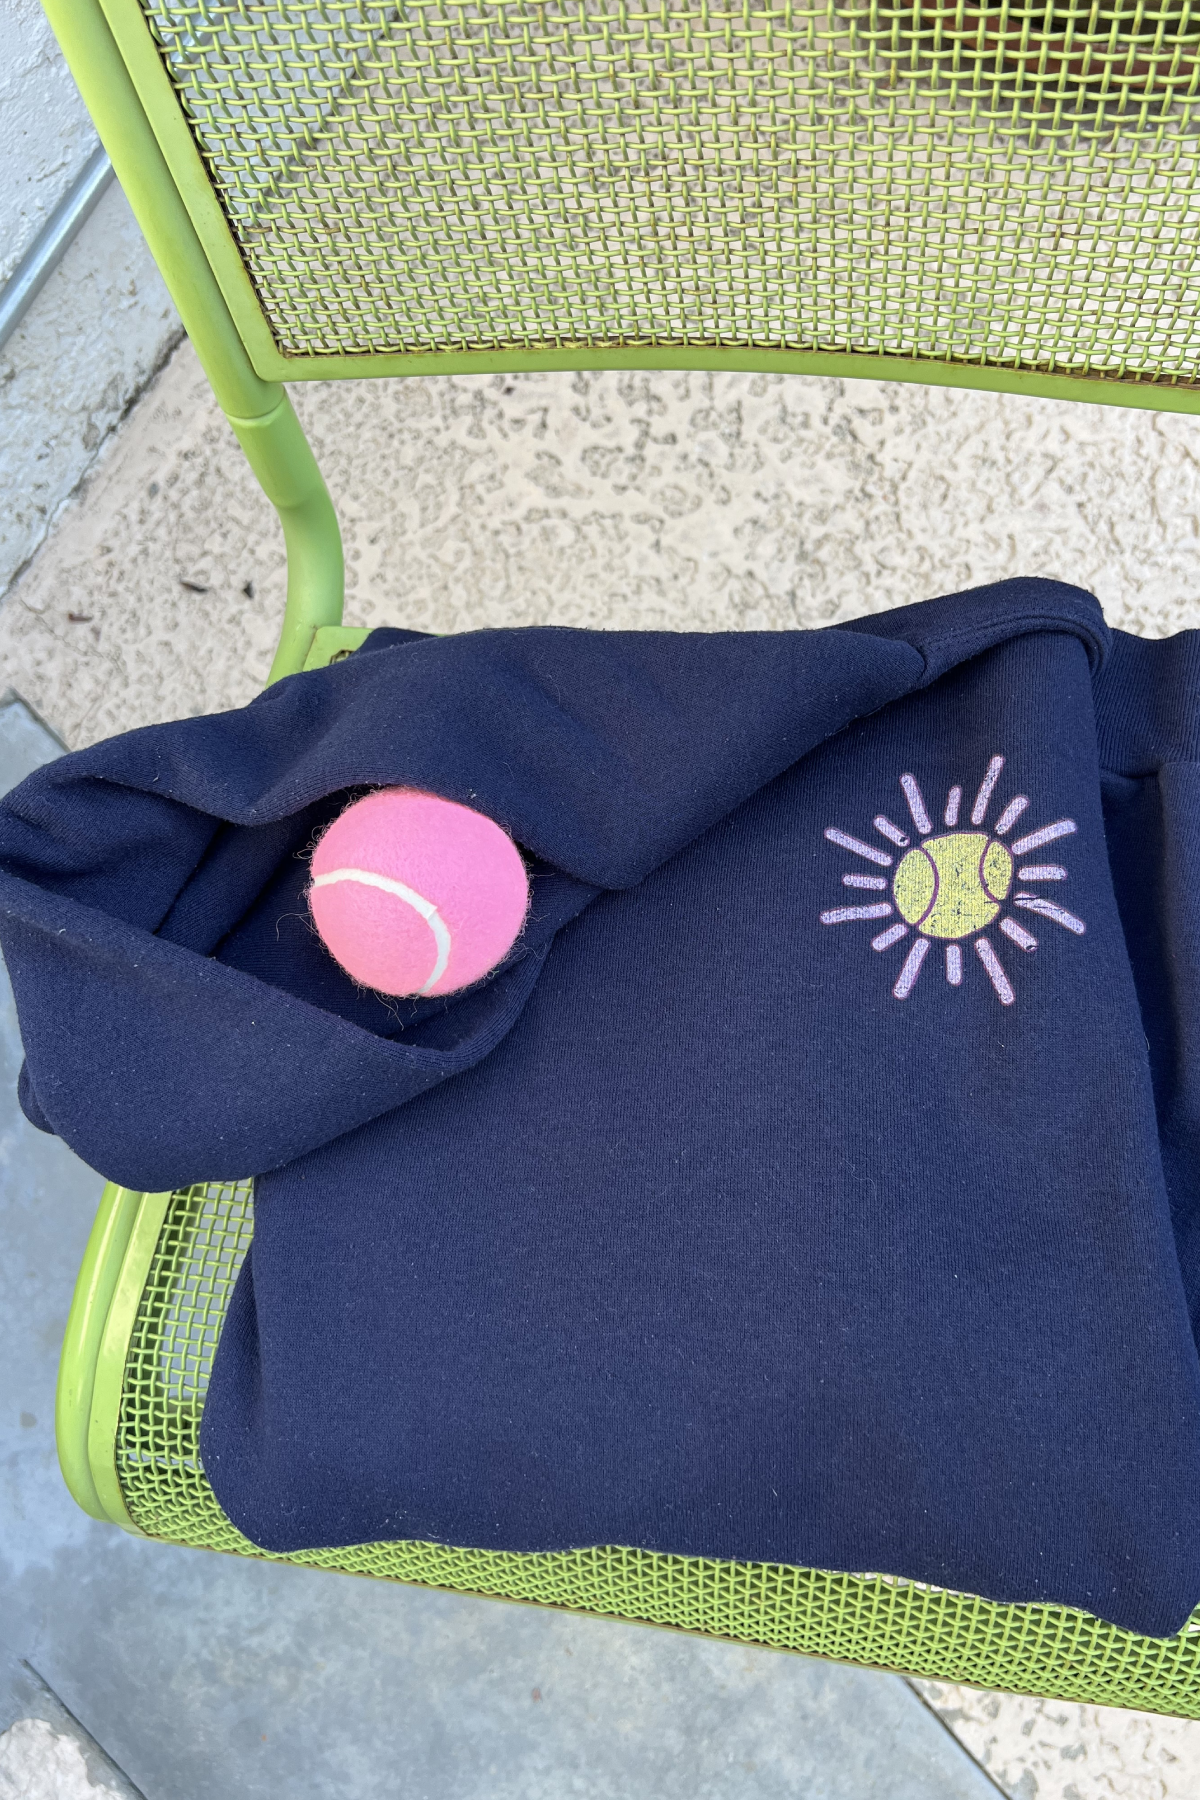 Joshua Tree Desert Tennis on Upcycled Vintage Sweatshirts & Tees